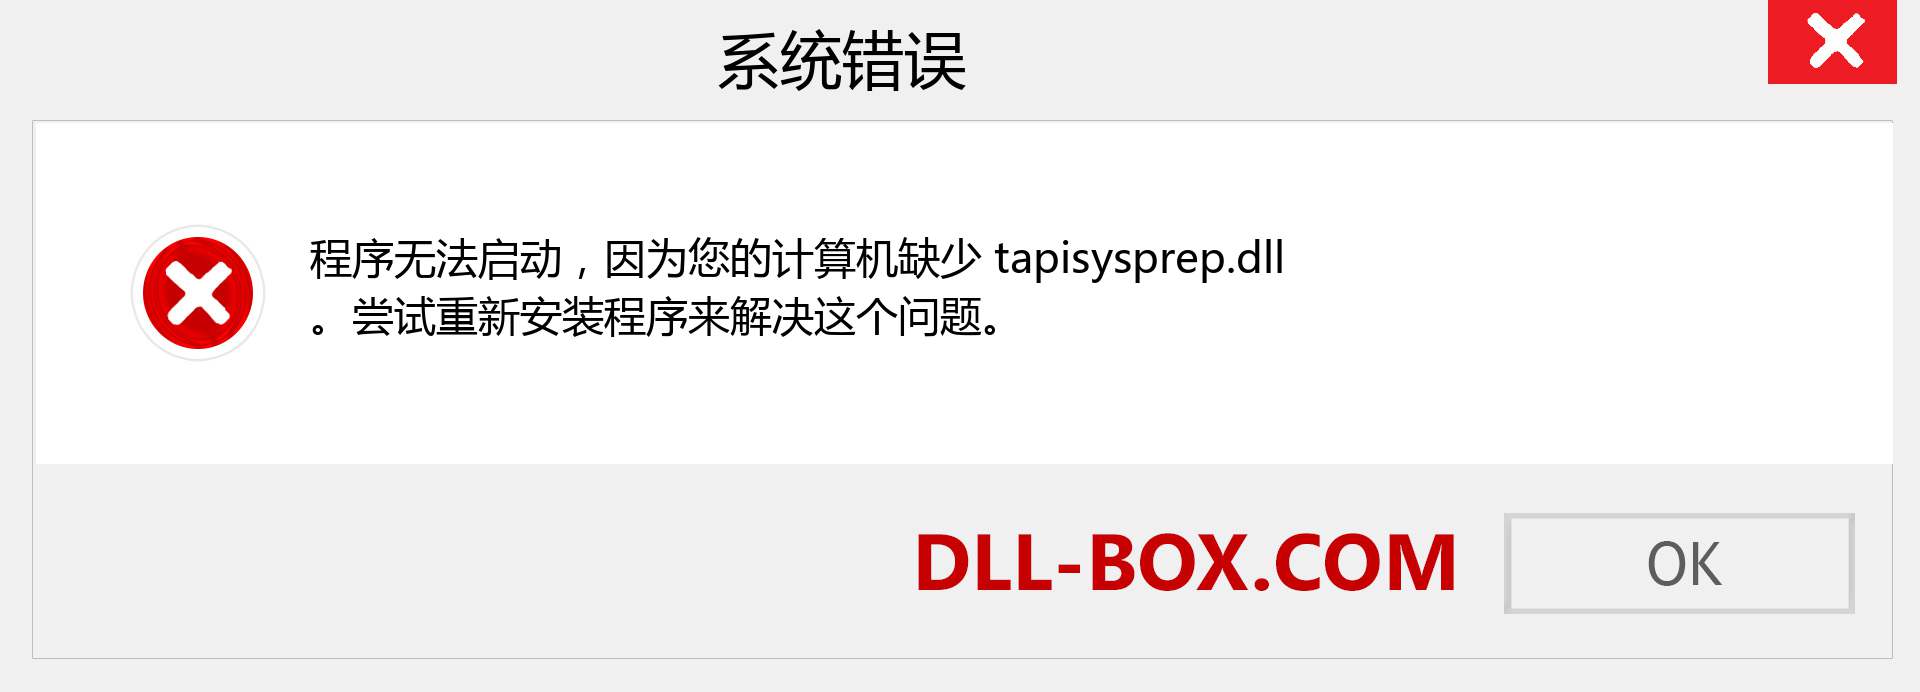 tapisysprep.dll 文件丢失？。 适用于 Windows 7、8、10 的下载 - 修复 Windows、照片、图像上的 tapisysprep dll 丢失错误